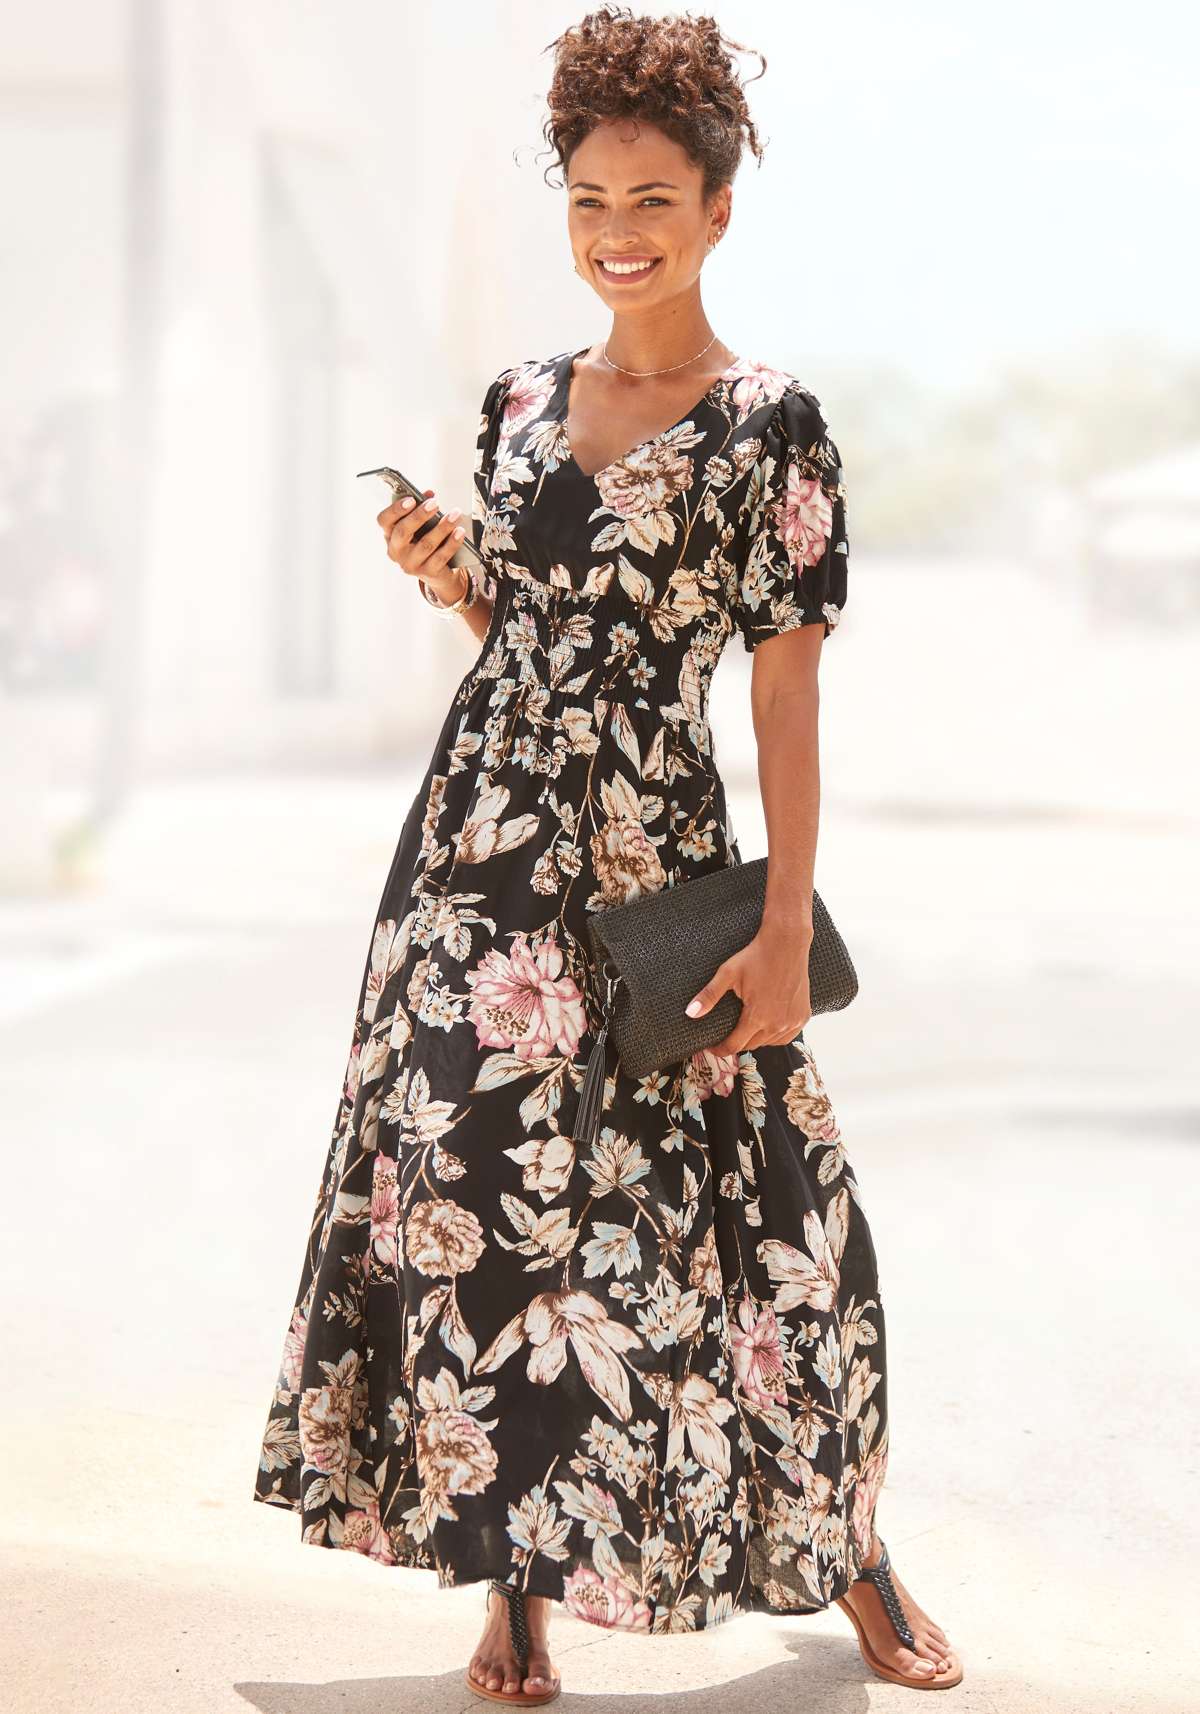 Платье-макси с цветочным принтом и легкими рукавами-буфами, летнее платье, повседневно-элегантное.